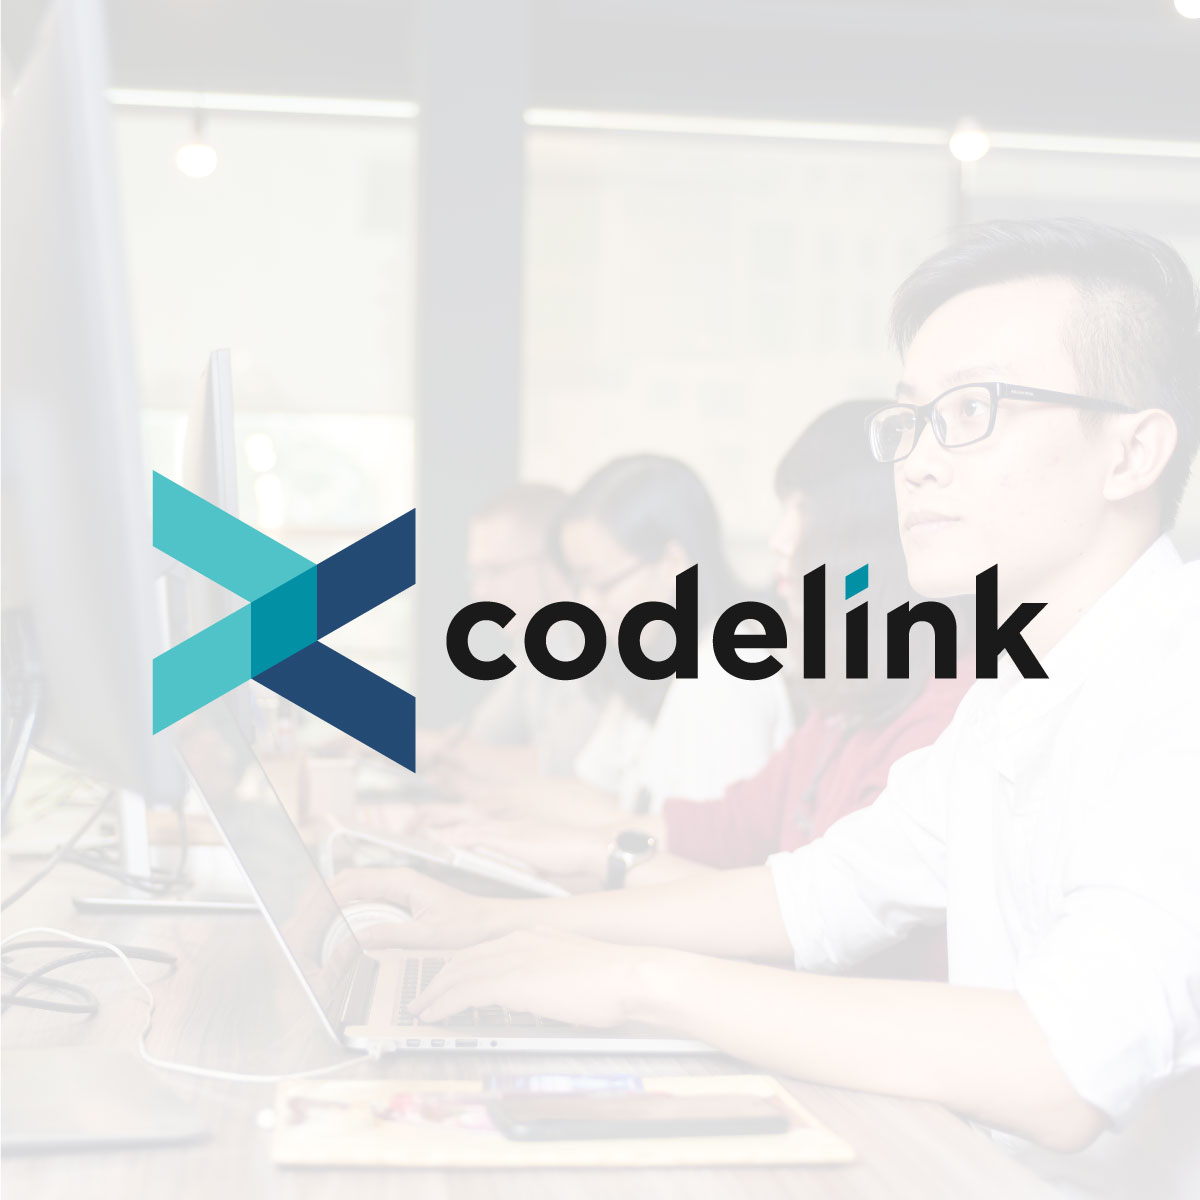 codelink v2 lans